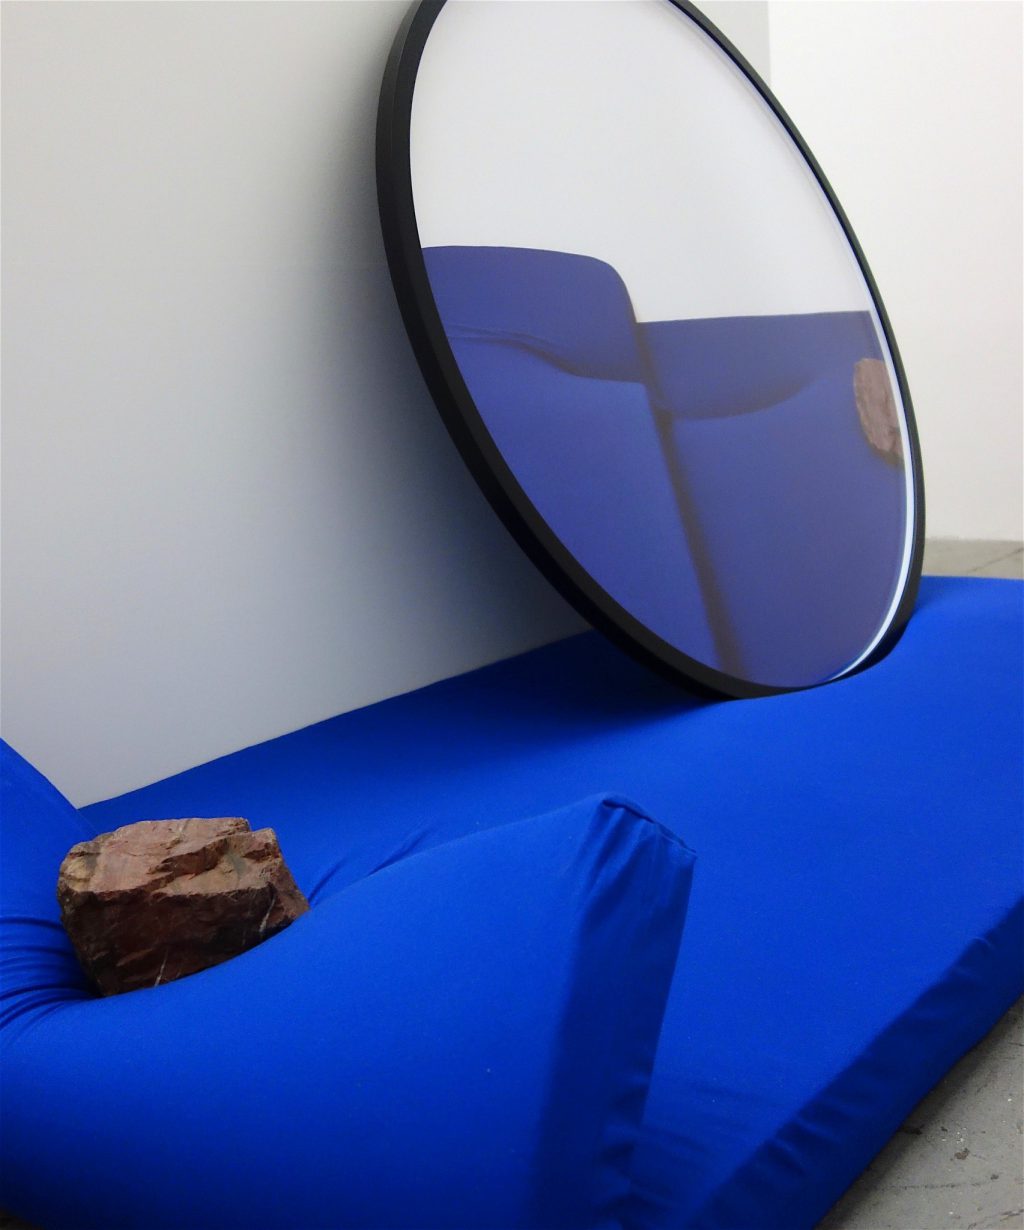 磯谷博史 ISOYA Hirofumi 「視差的仕草 (ブルー、レッド)」 “Parallax Gesture (Blue, Red)” 2016, detail. Framed Lambda print, blue mattress, red sedimentary rock of Chichibu, white wall